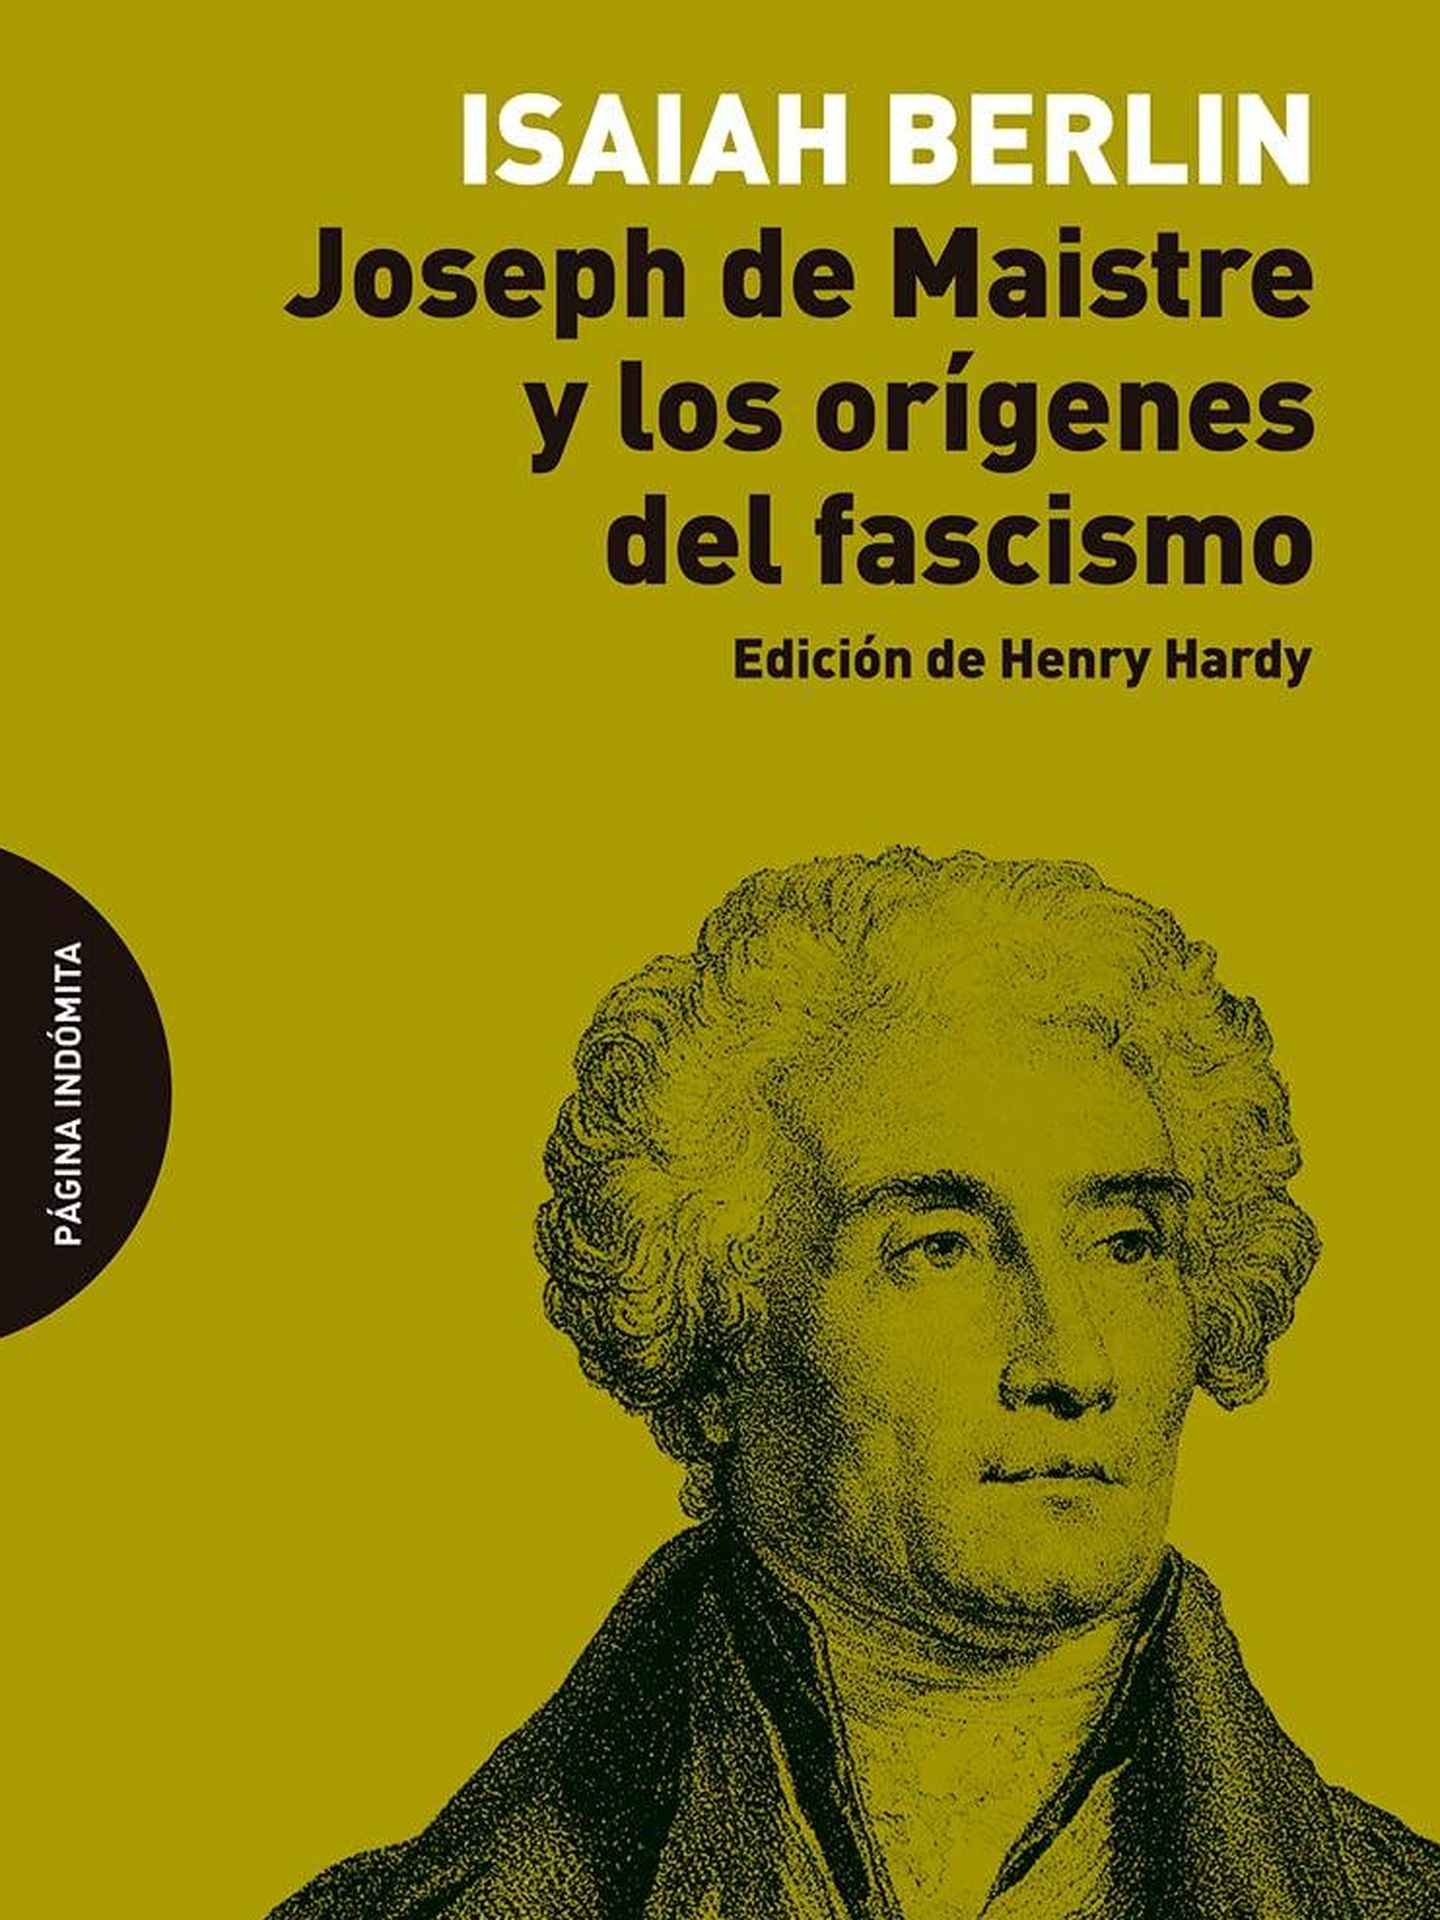 'Joseph de Maistre y los orígenes del fascismo'.